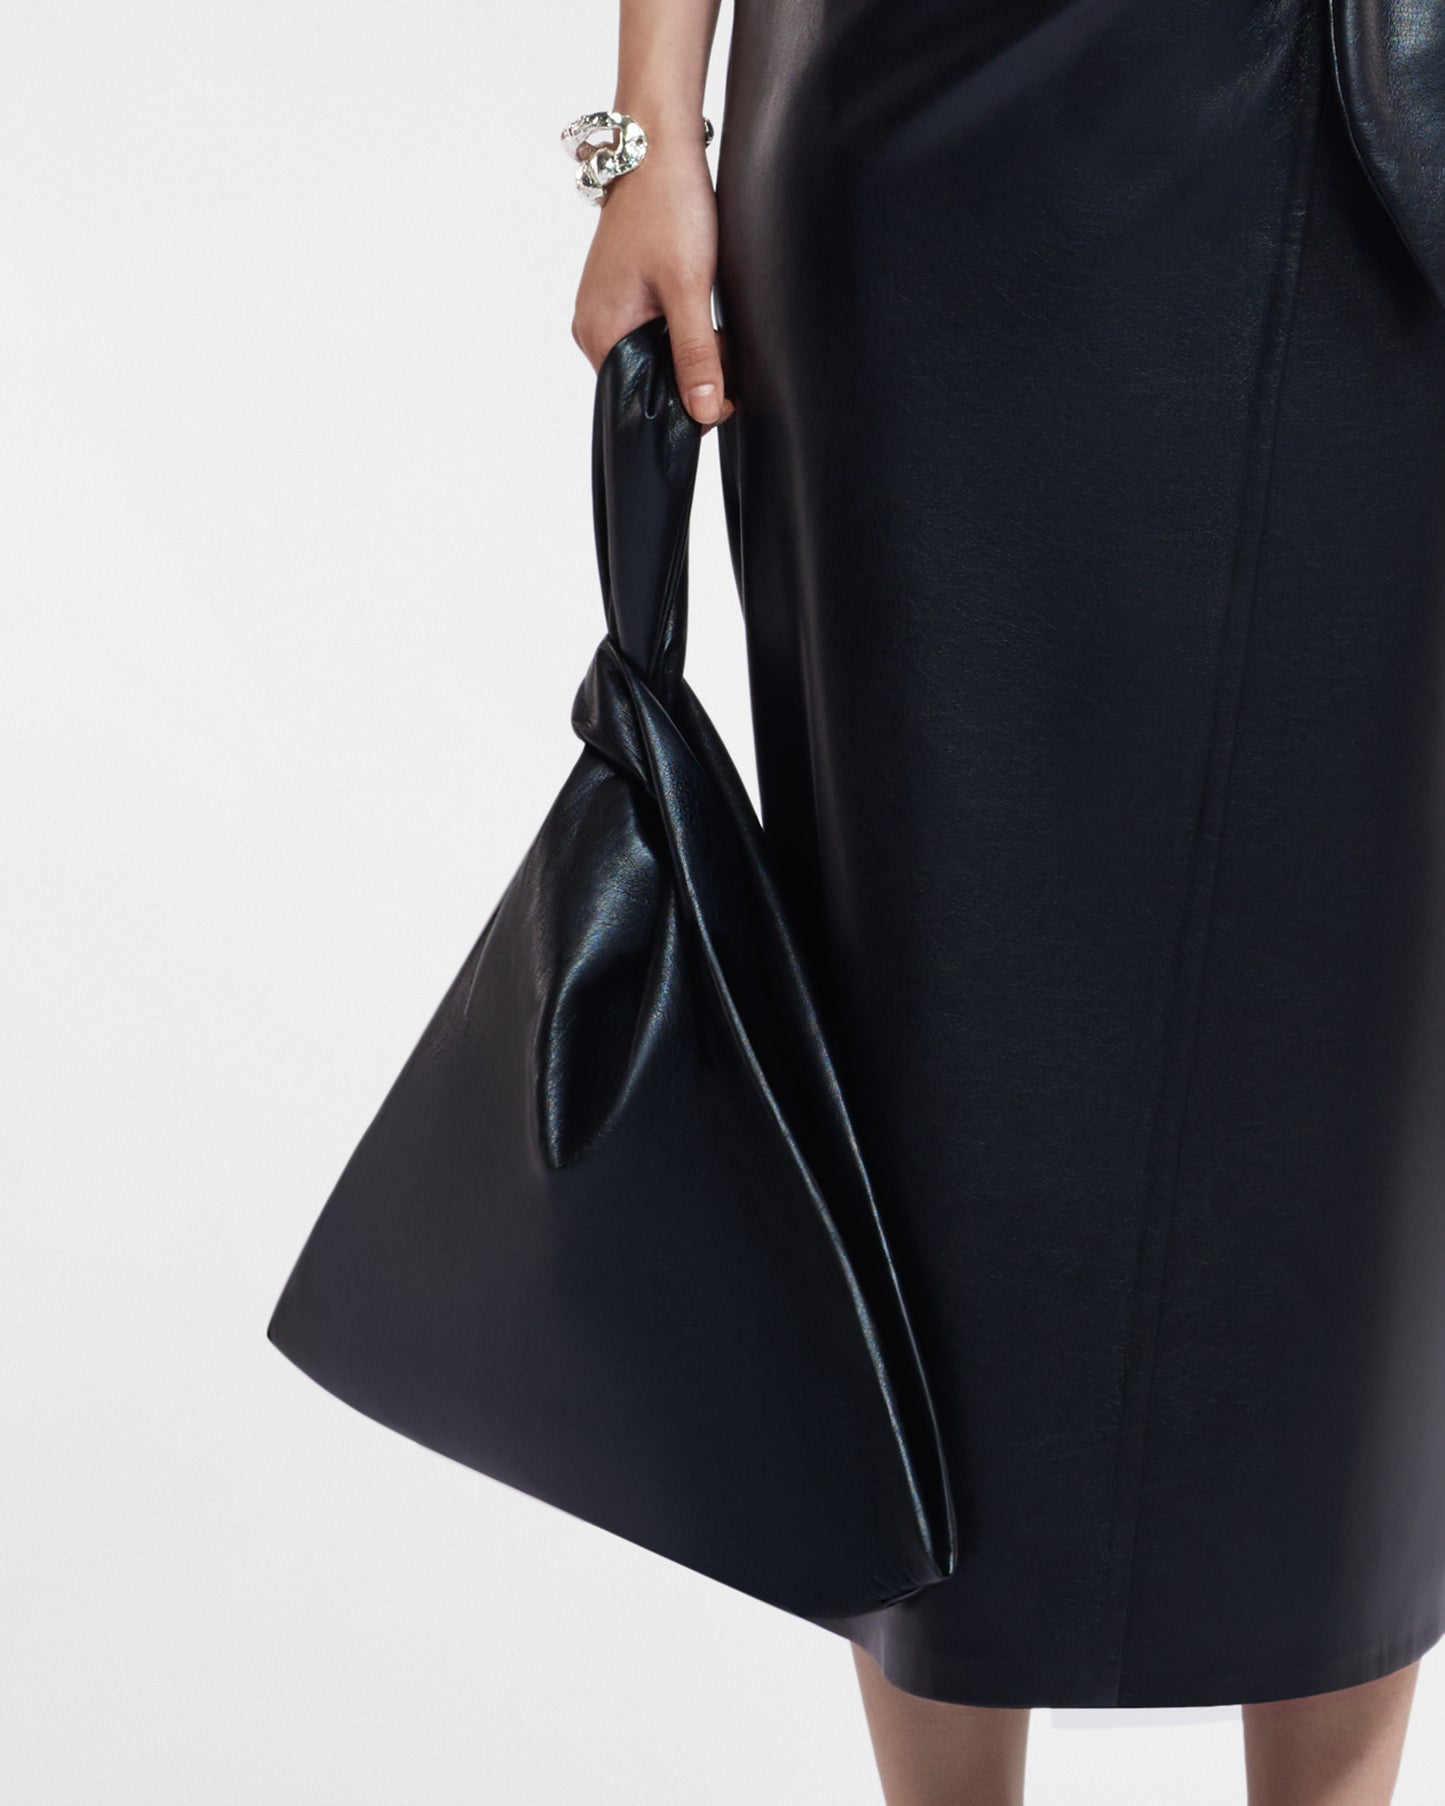 Jen Large - Okobor™ Alt-Leather Clutch Bag - Black